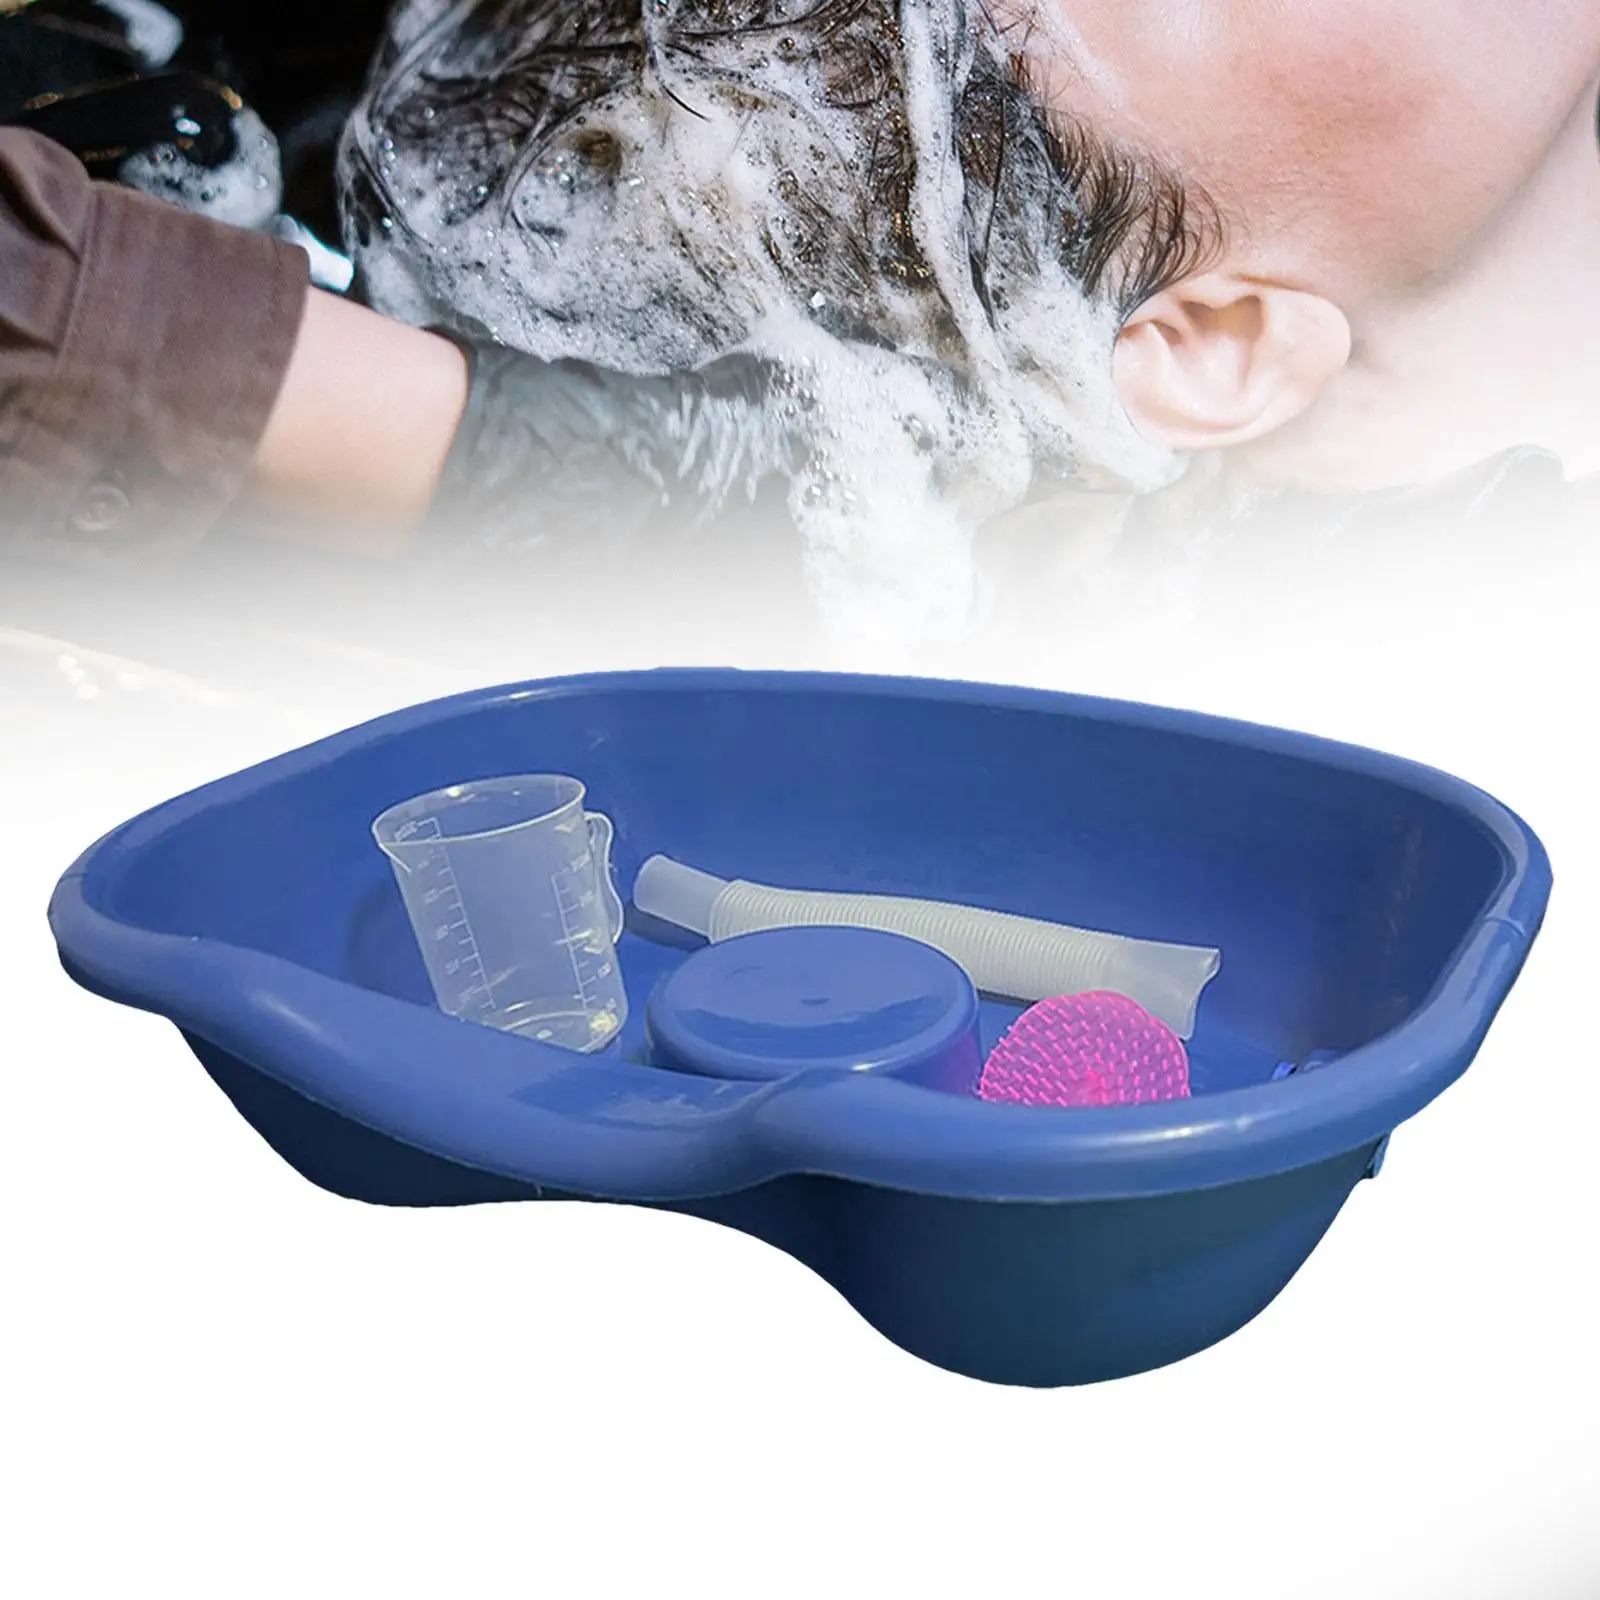 Portable Shampoo Bowl Daily Living Aids 46x35cm, Lightweight